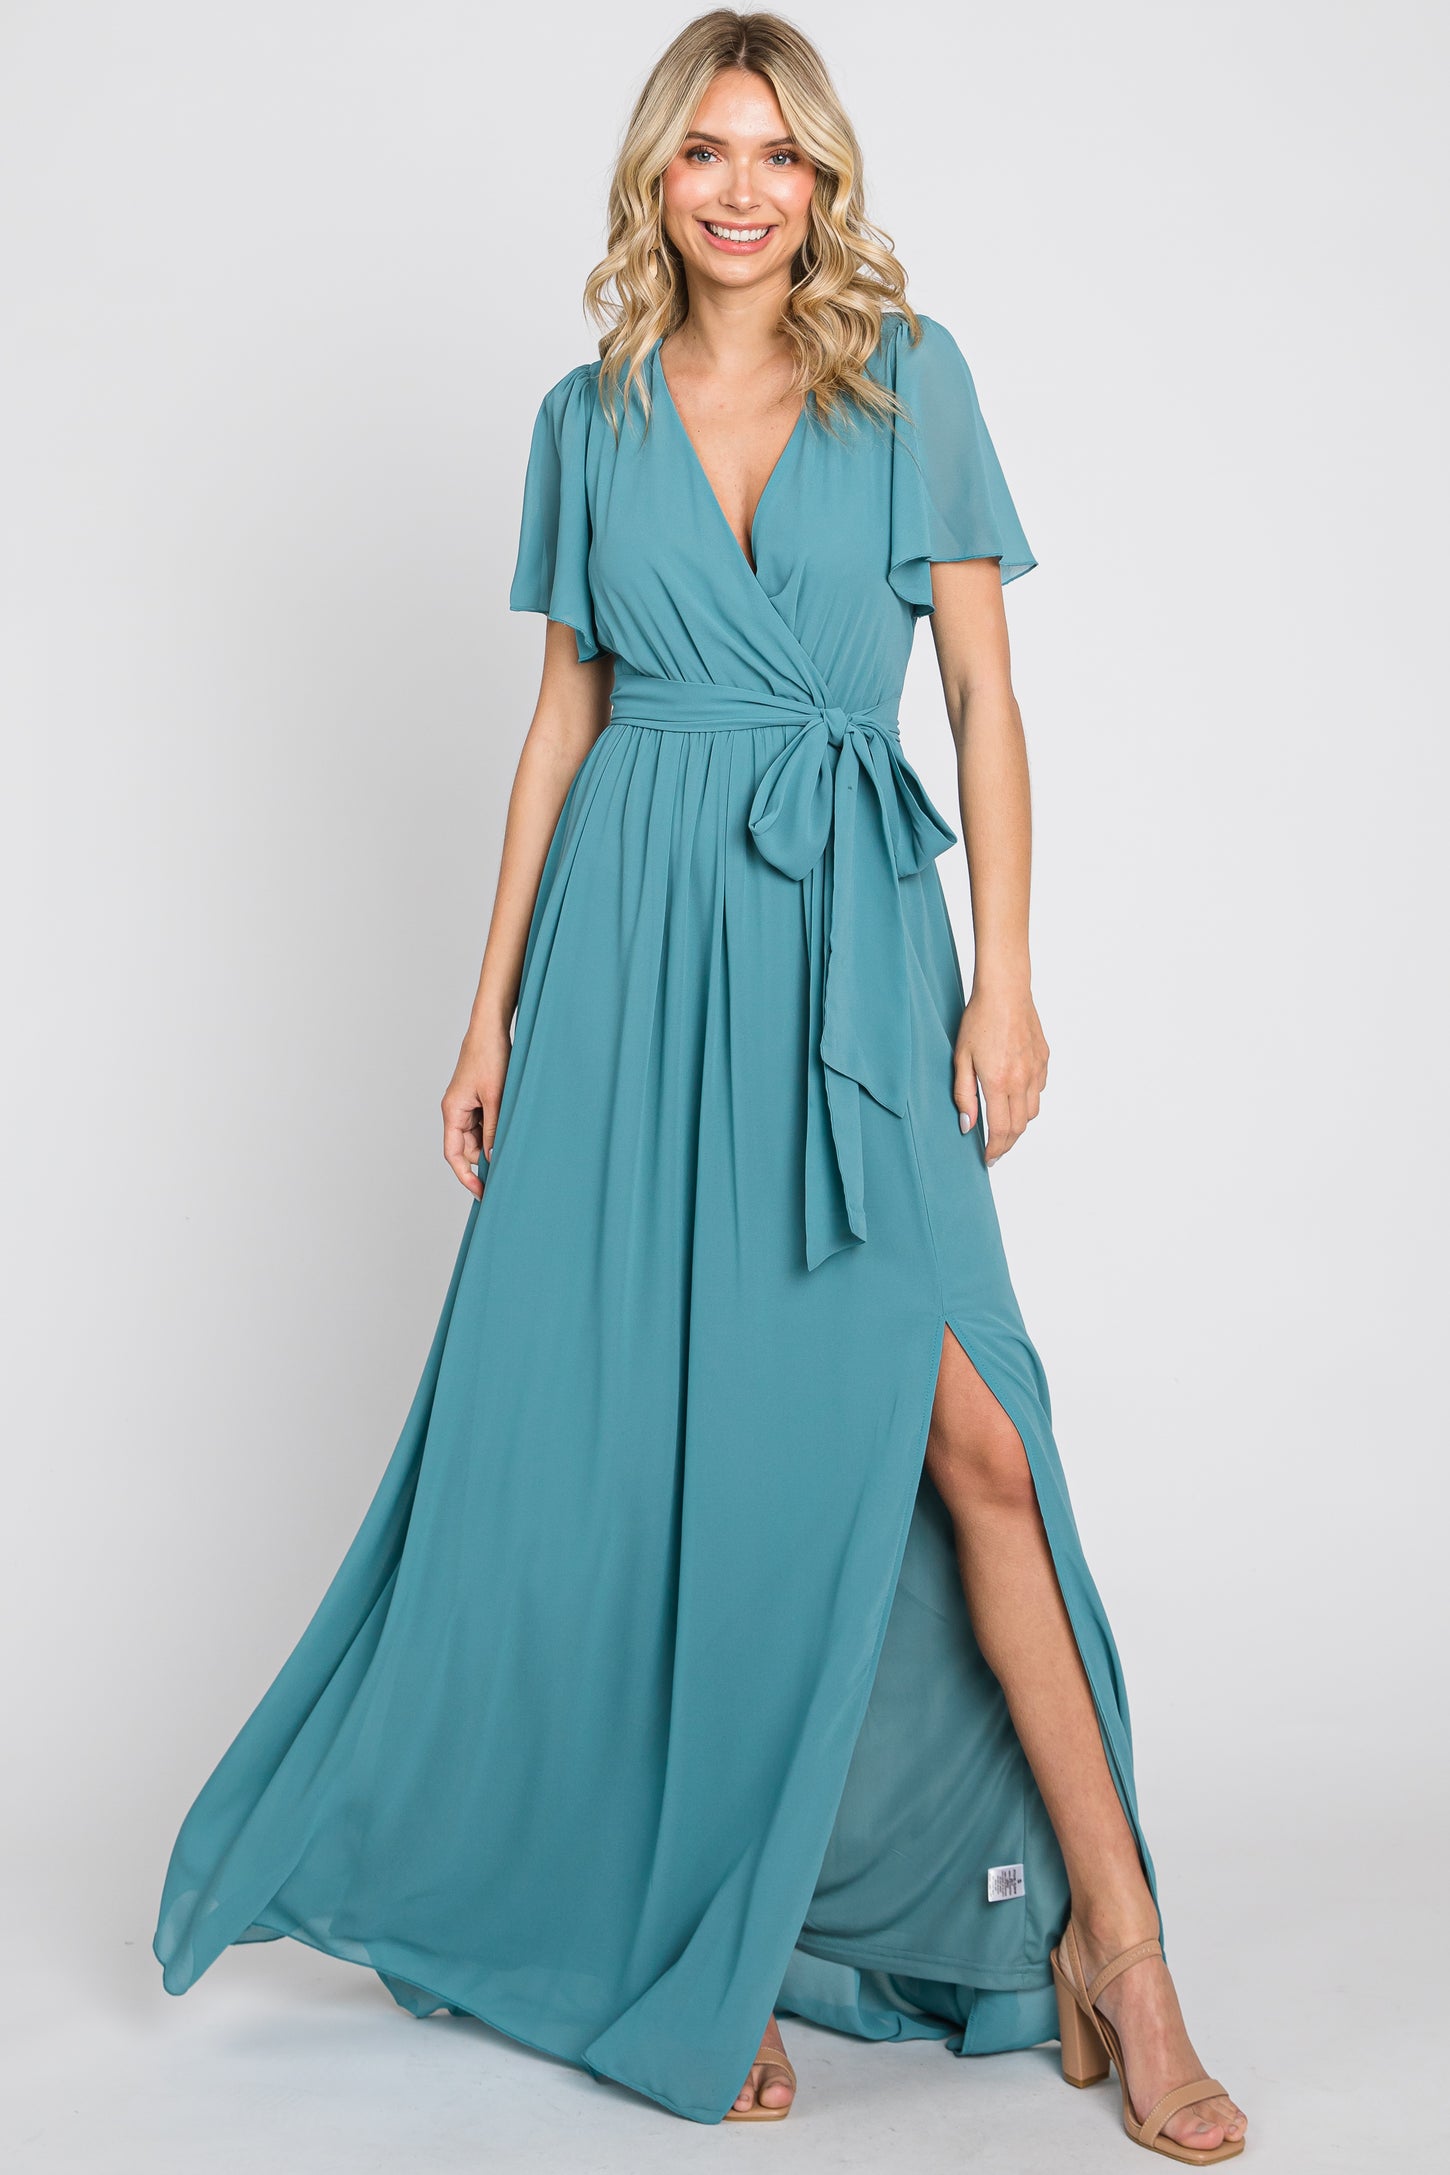 Turquoise Chiffon Short Sleeve Wrap V-Neck Front Slit Maxi Dress